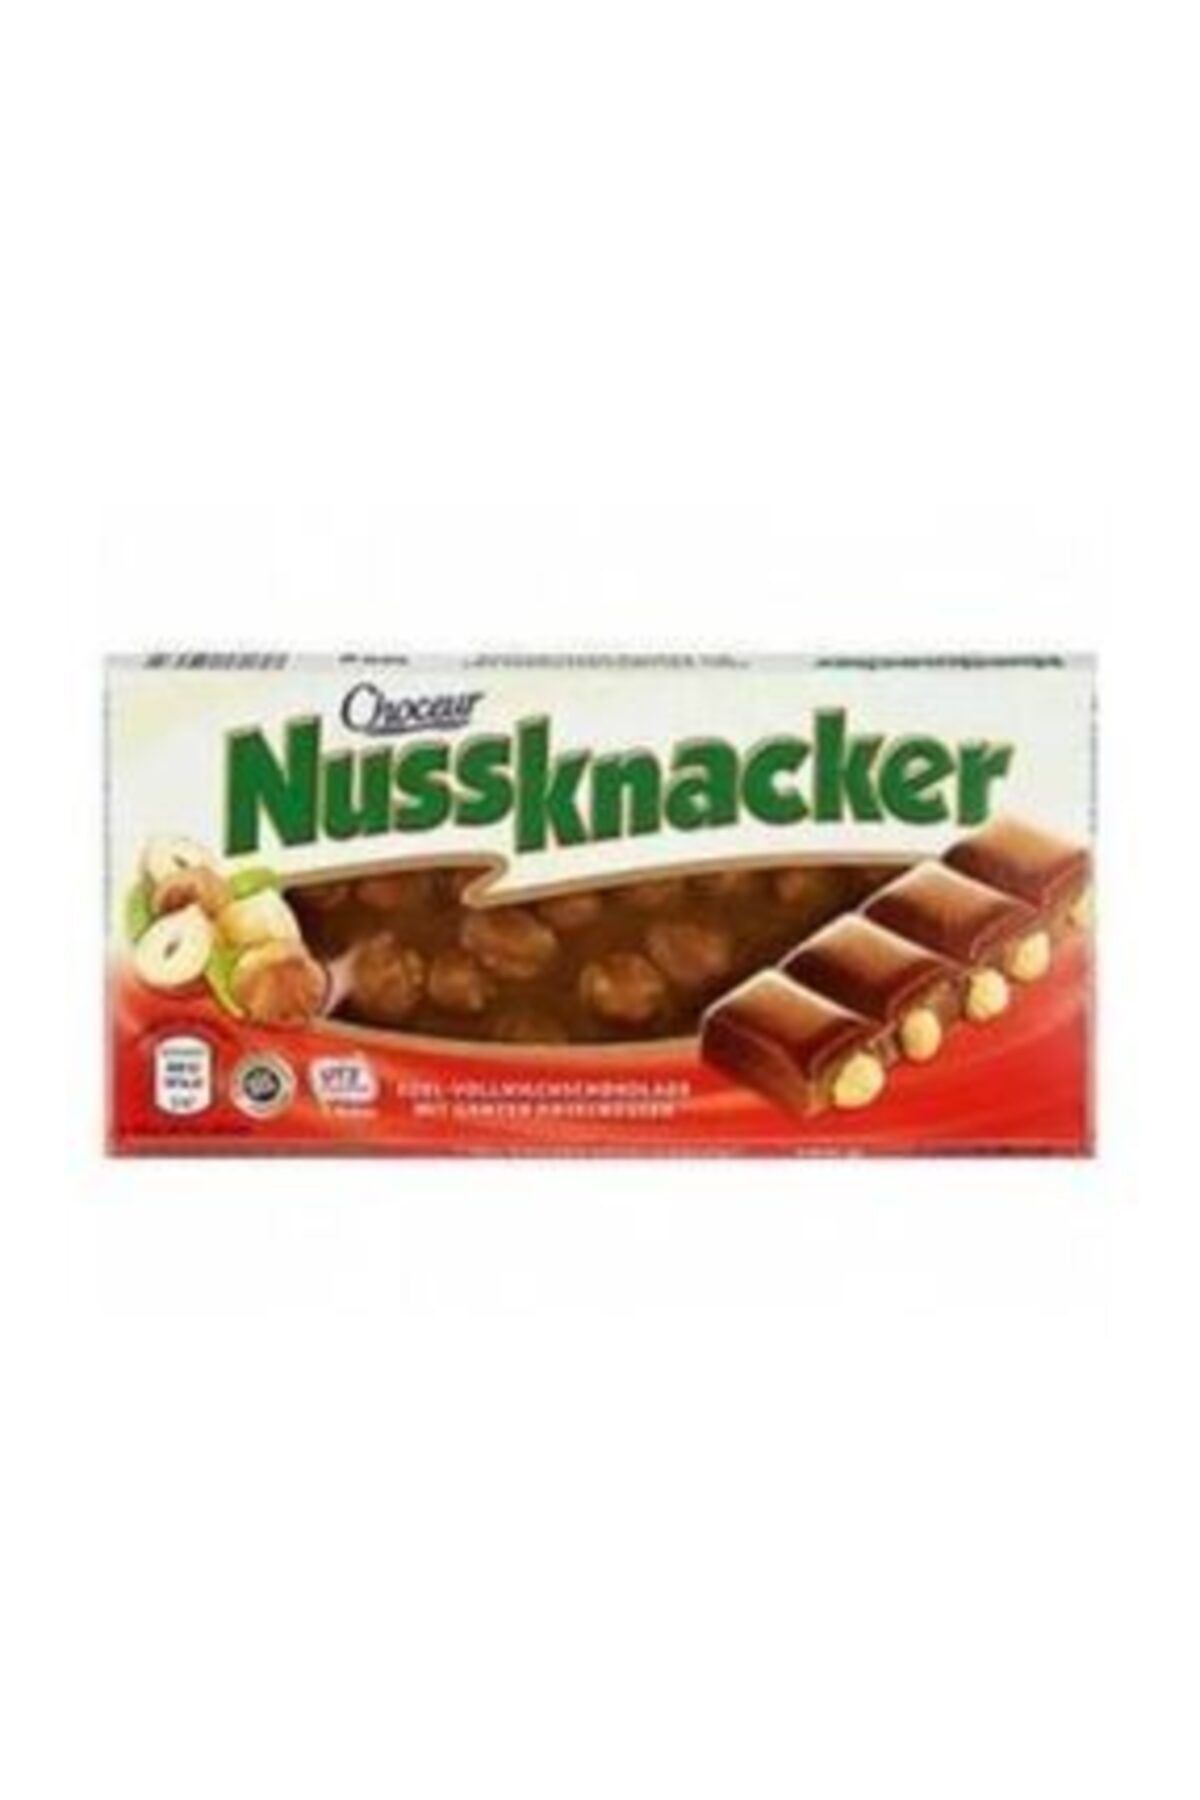 Nestle Choceur Nussknacker Bütün Fındıklı Çikolata 100g Menşei Almanya-10 Adet